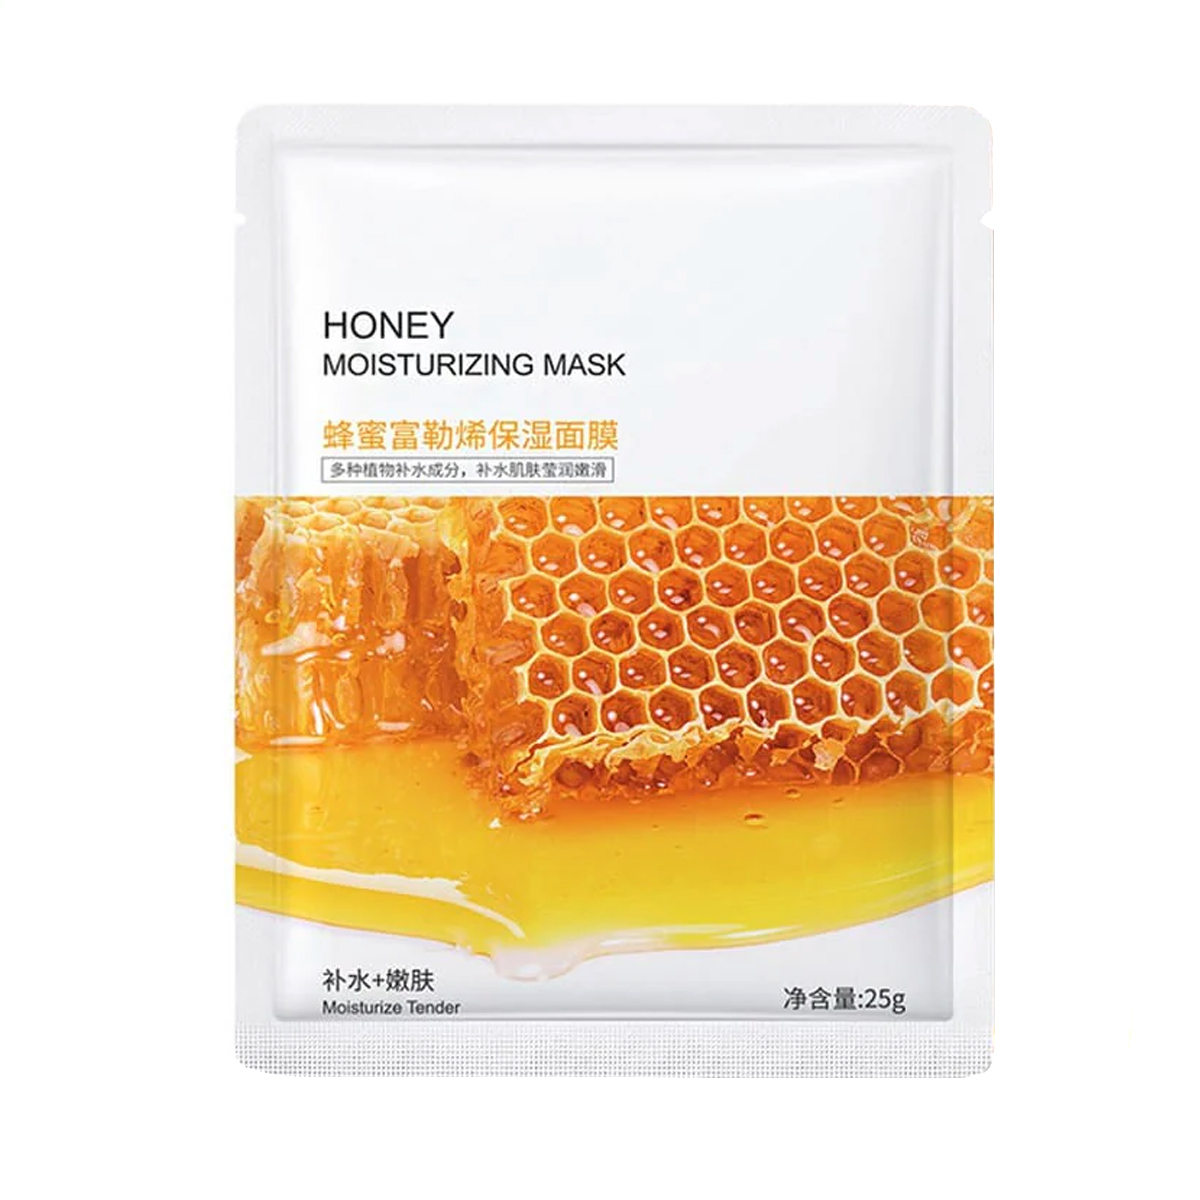 ماسک نقابی مرطوب کننده و مغذی عسل~Honey Moisturizing Mask~BIOAQUA